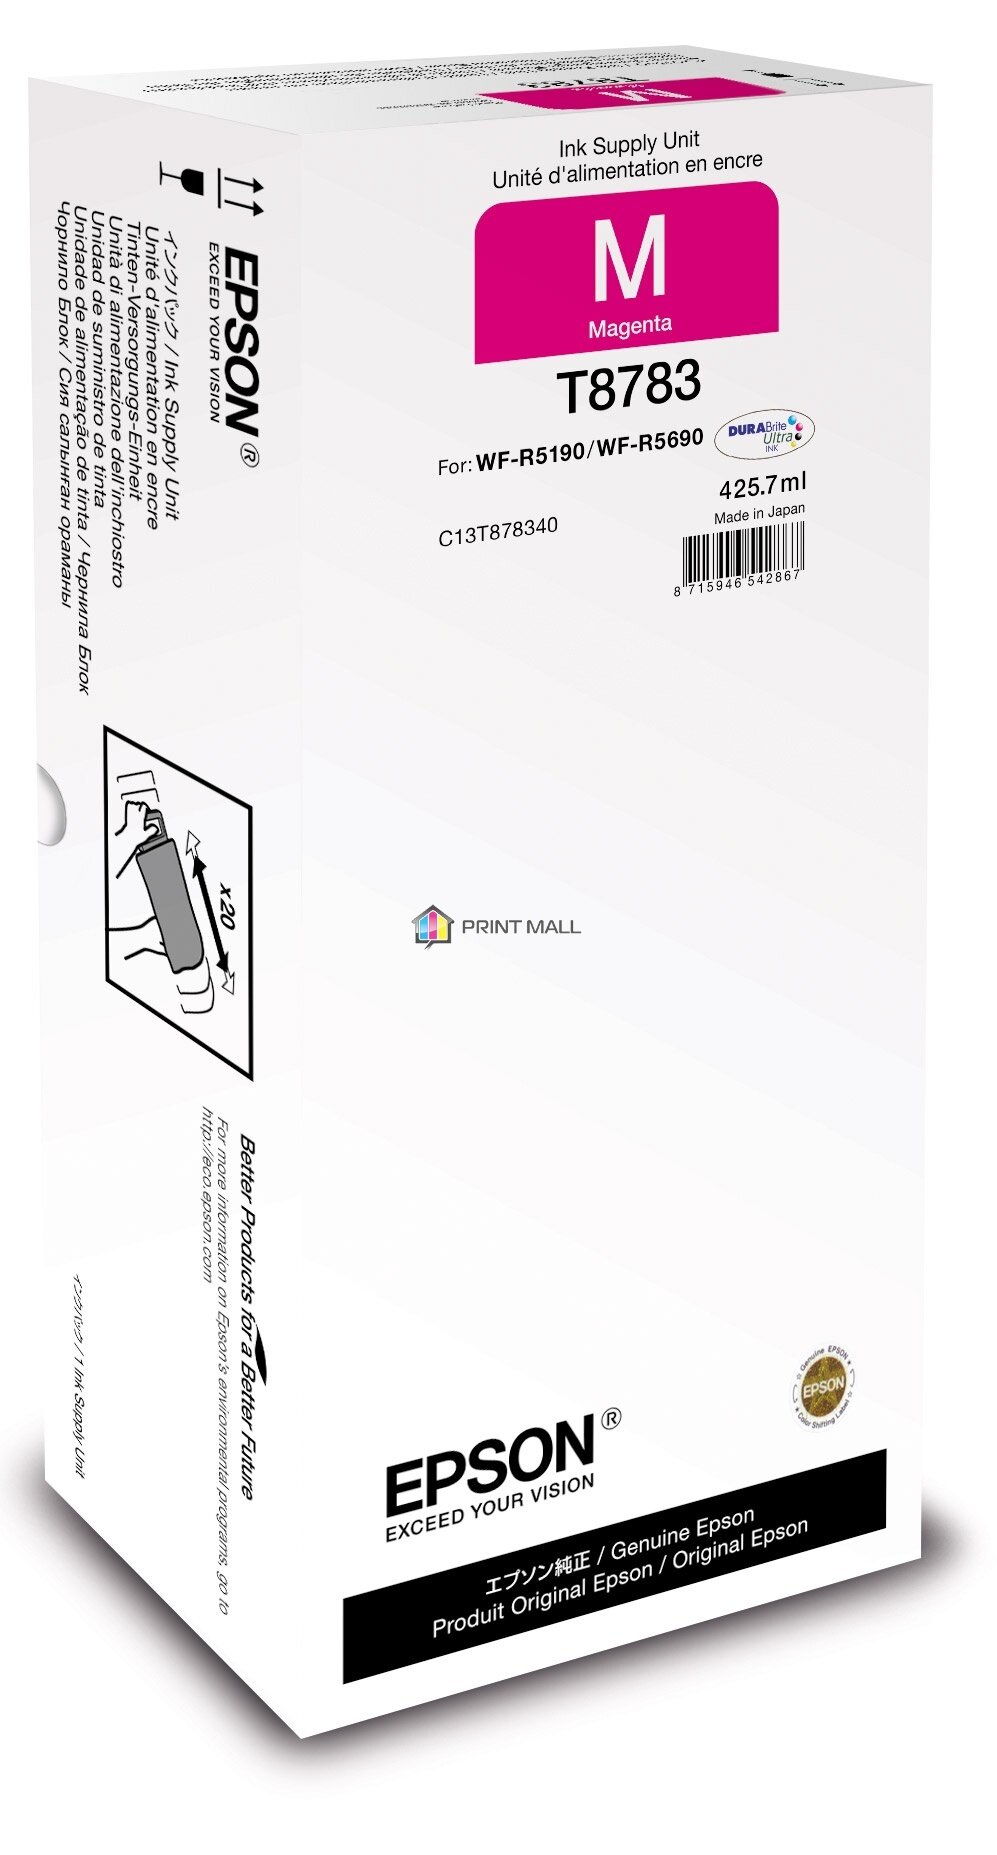 Контейнер с пурпурными чернилами EPSON повышенной емкости XXL WF-R5190/5690 (50000 стр) C13T878340